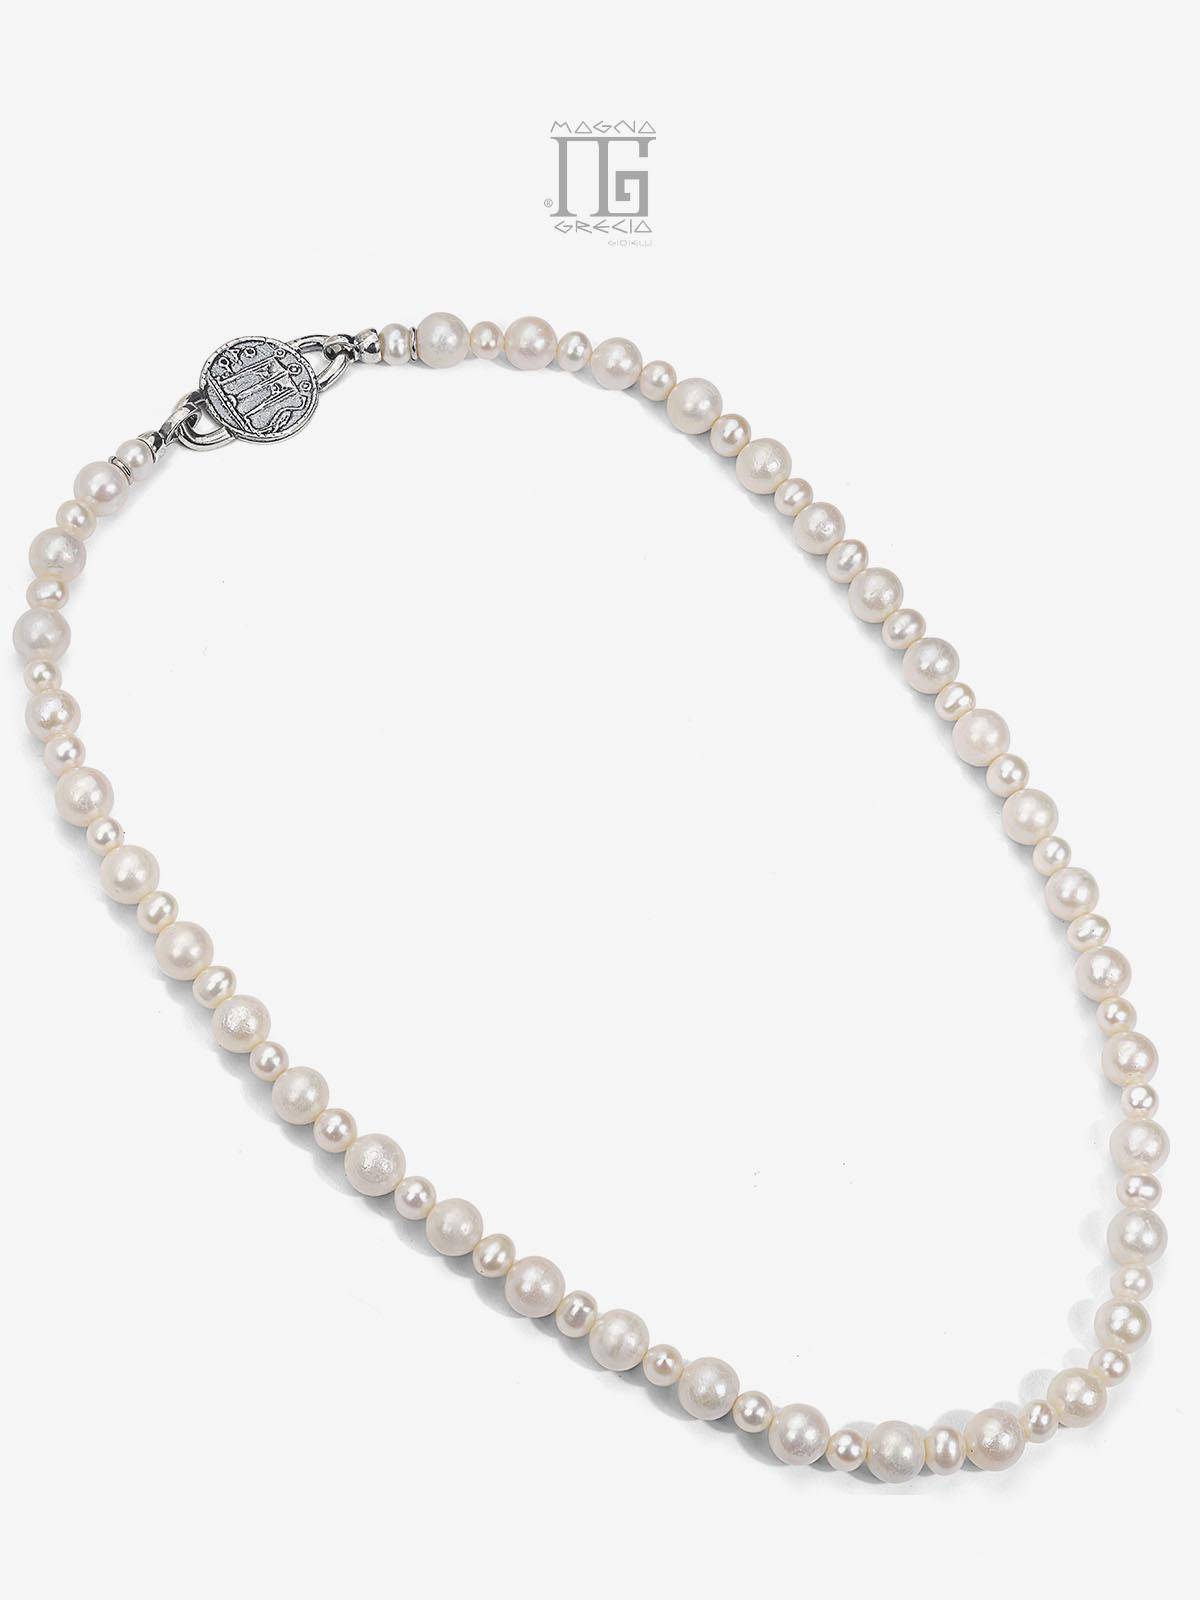 Collar de perlas naturales de agua dulce con estater de plata Código MGK 4068 V